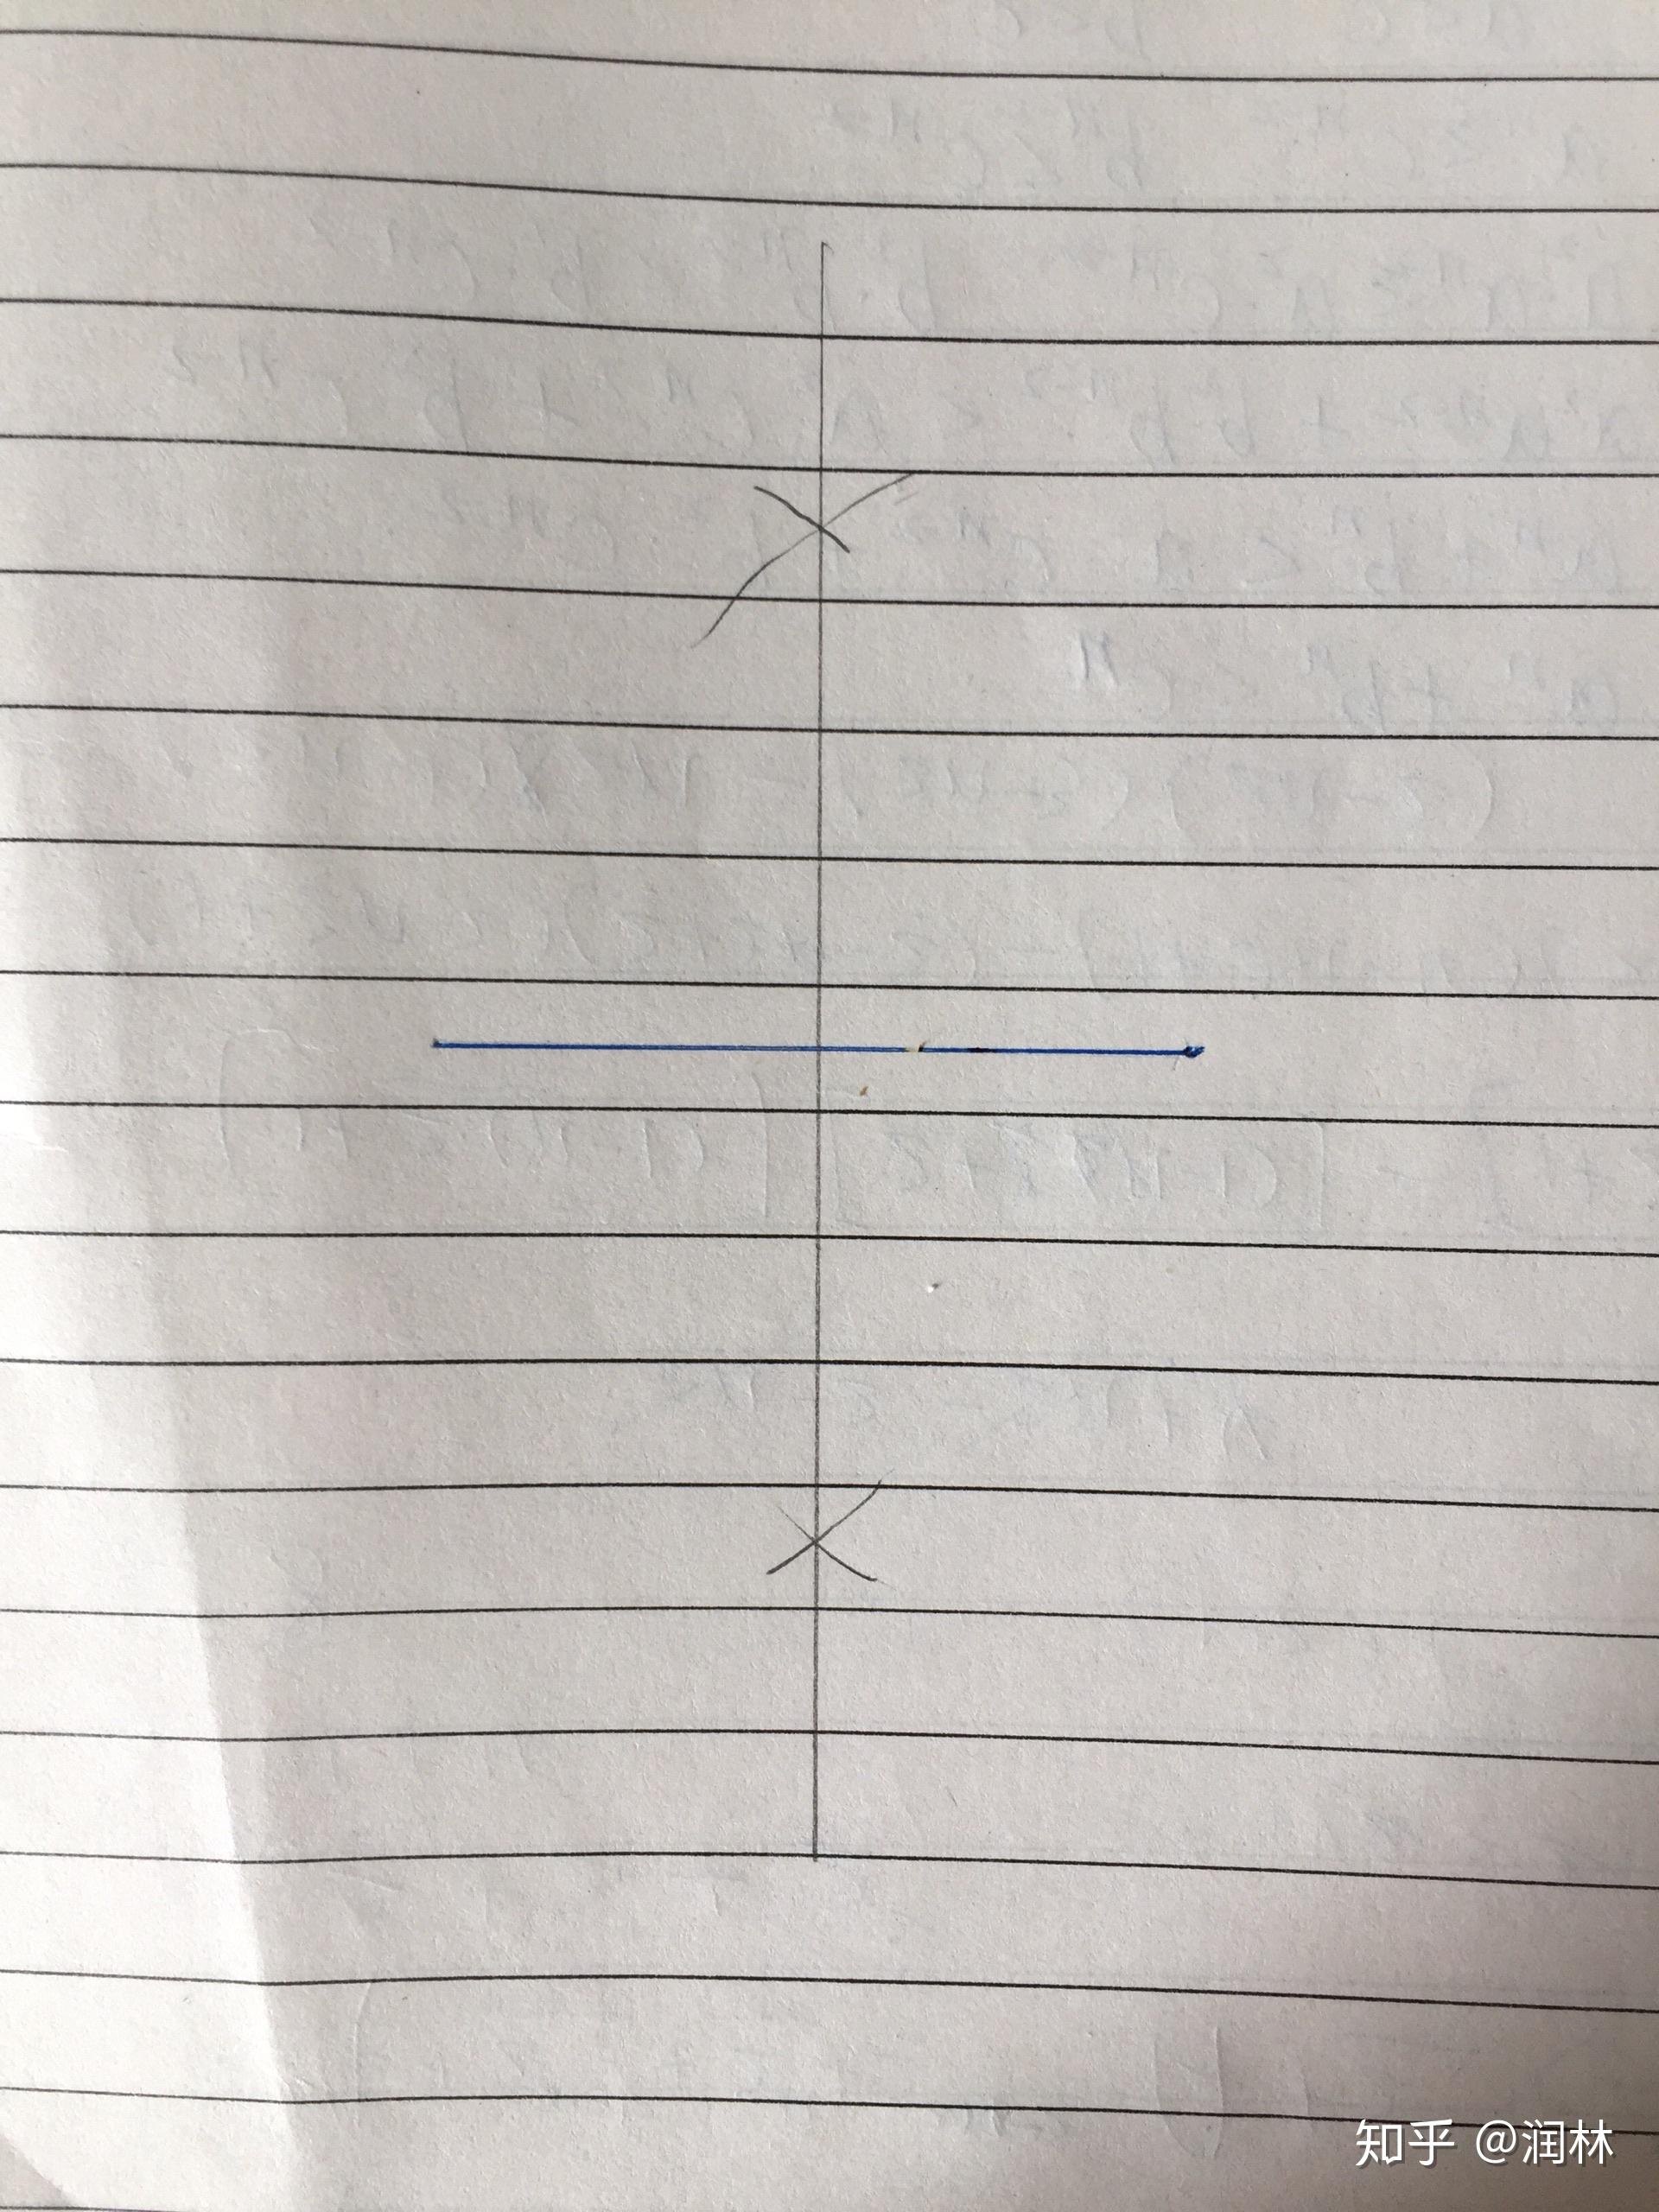 如何用圆规画出三角形的中线? 